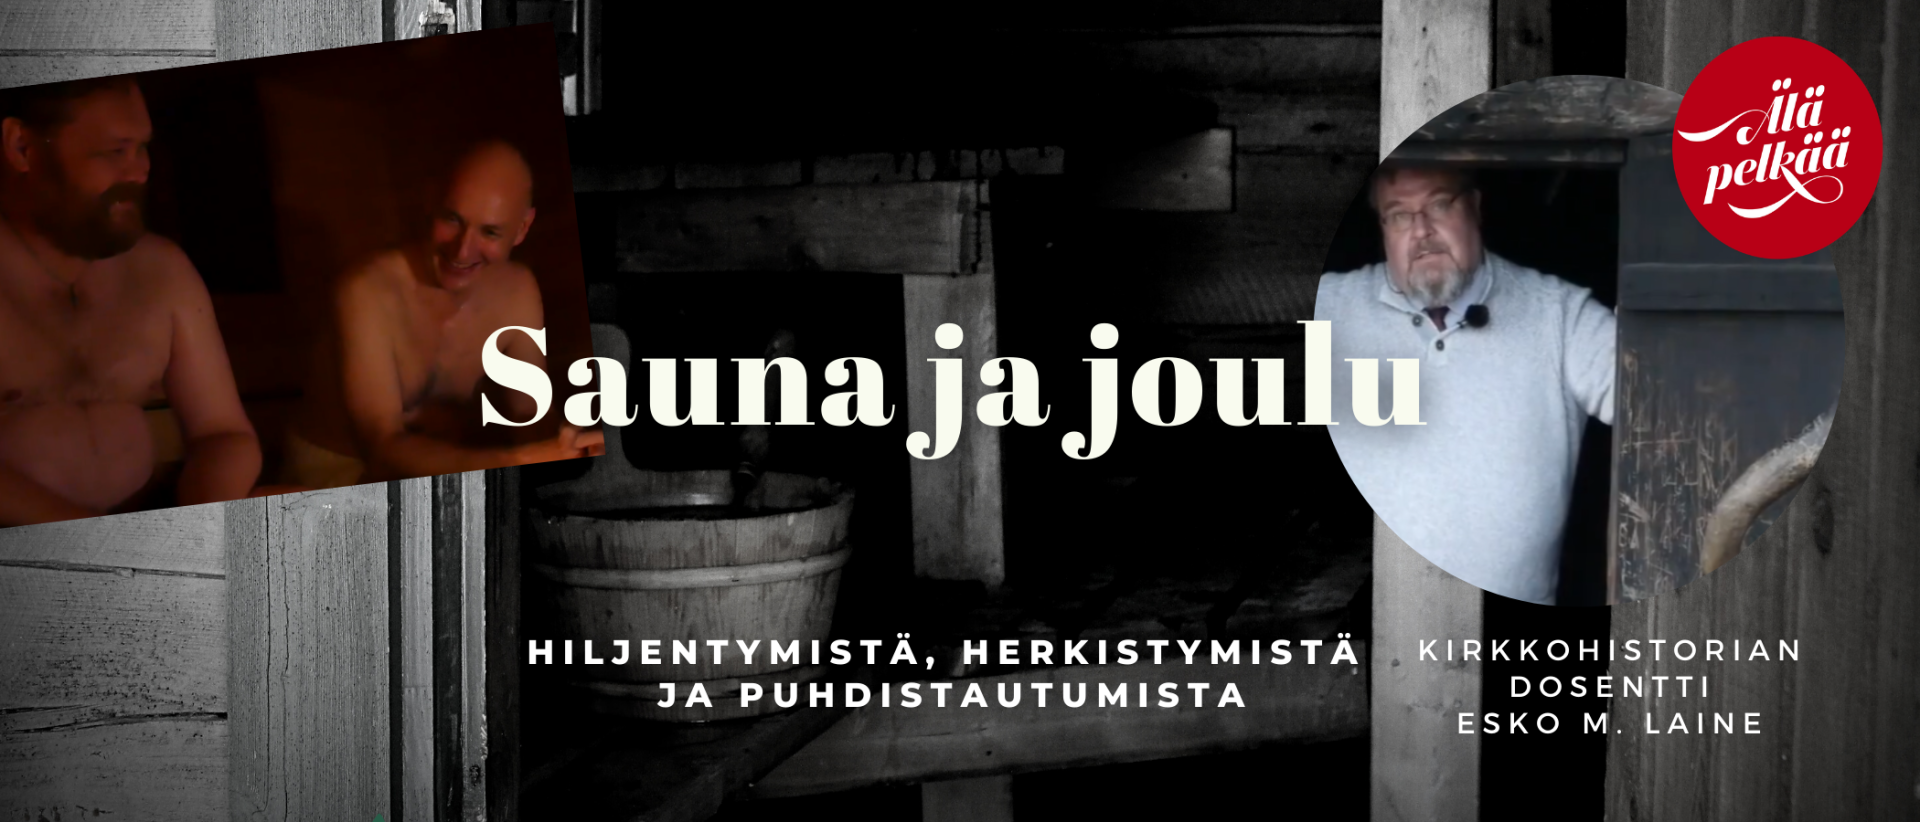 Sauna ja joullu. videon mainoskuvassa kuva saunan sisätiloihin  , toinen jossa löylytettää ja dosentto Esko M. Laineen kuva saunan ovella